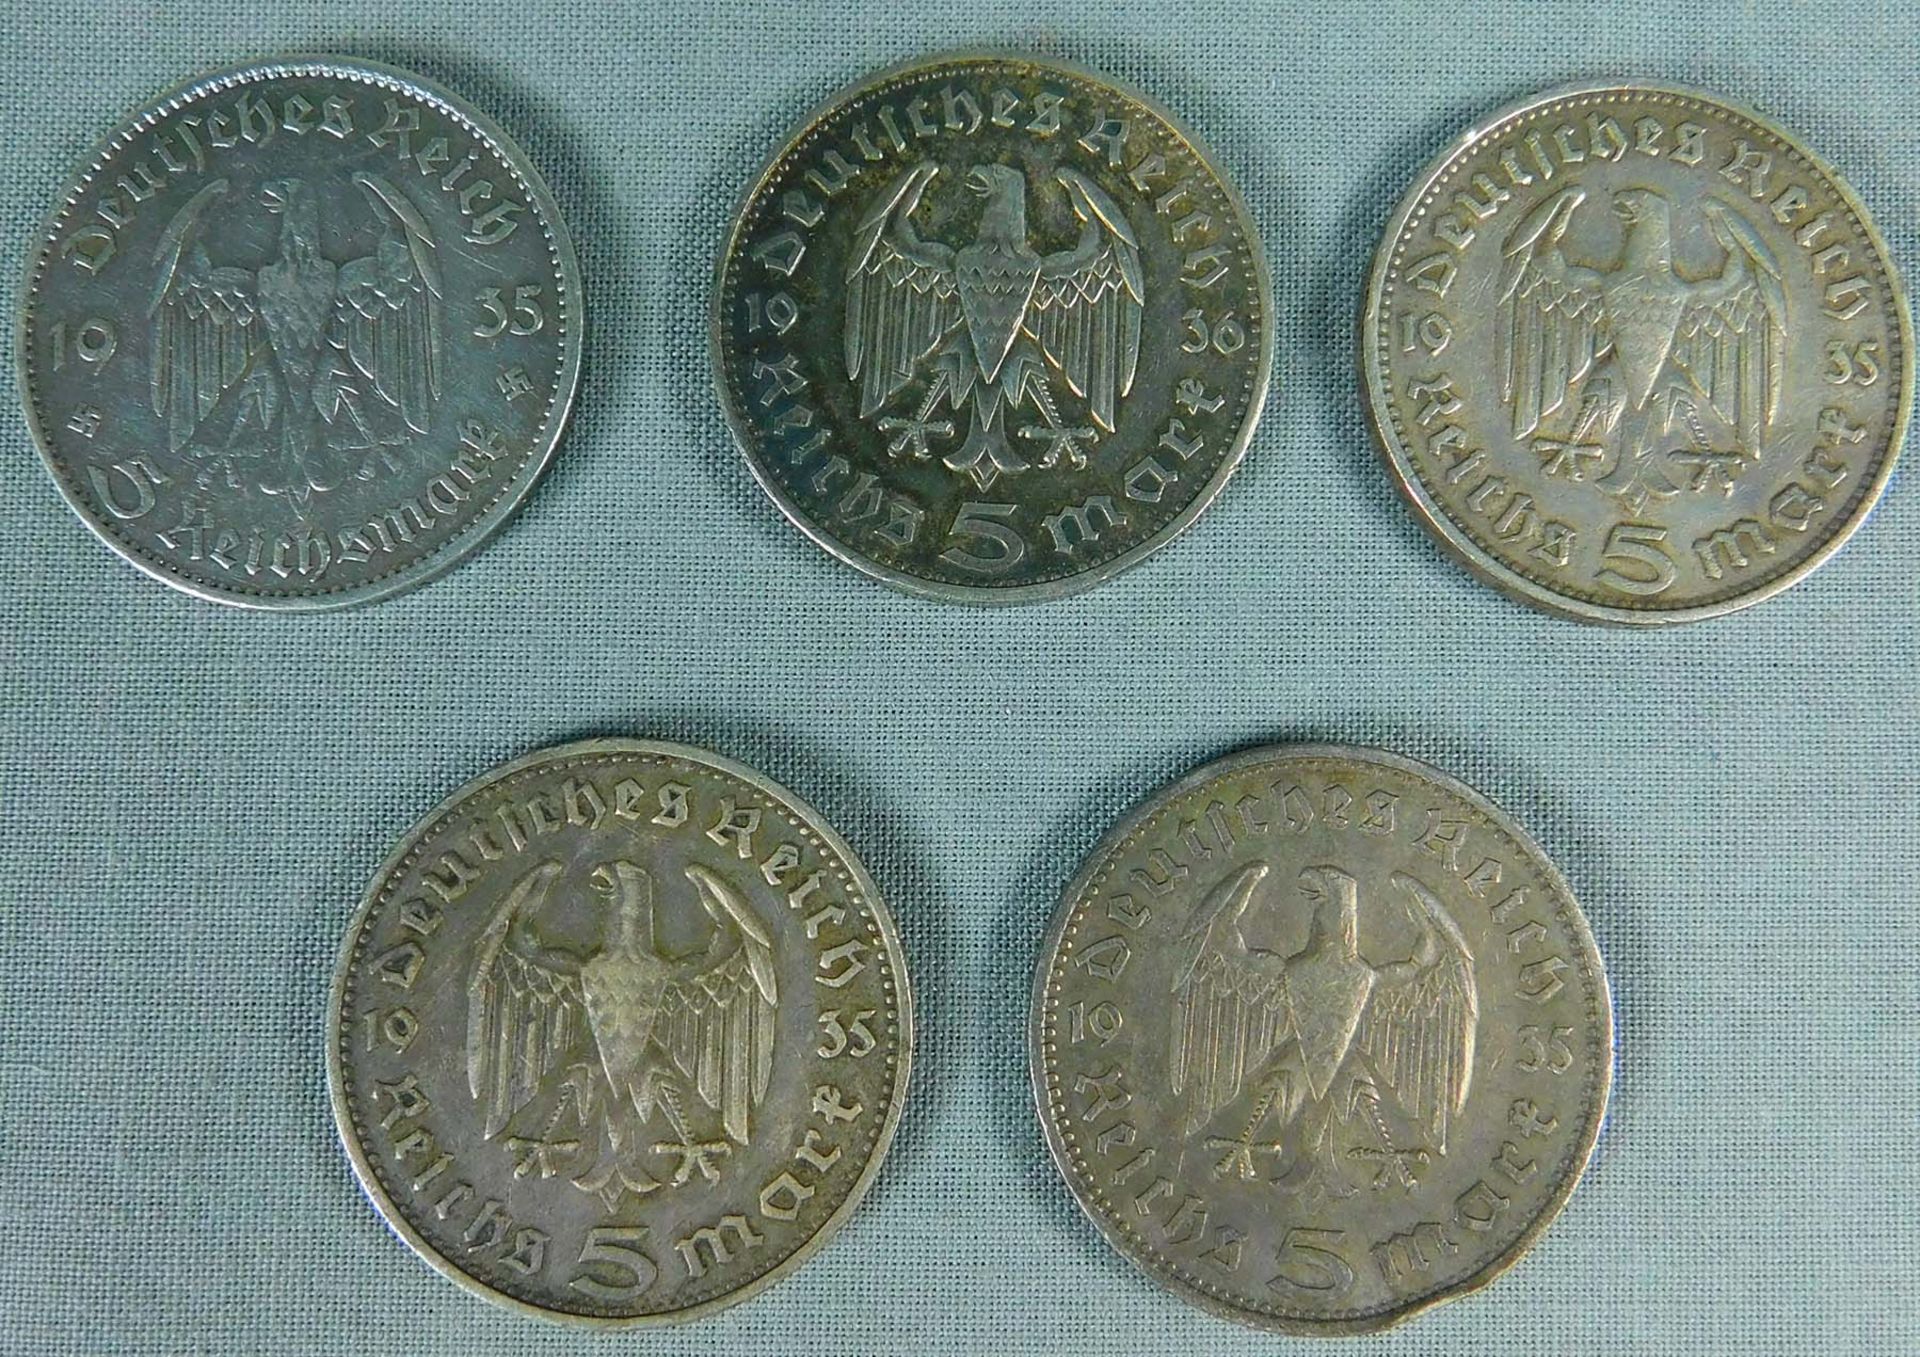 5 x 5 Reichsmark. Silbermünzen. Deutsches Reich. 1935. 1936. - Image 3 of 10